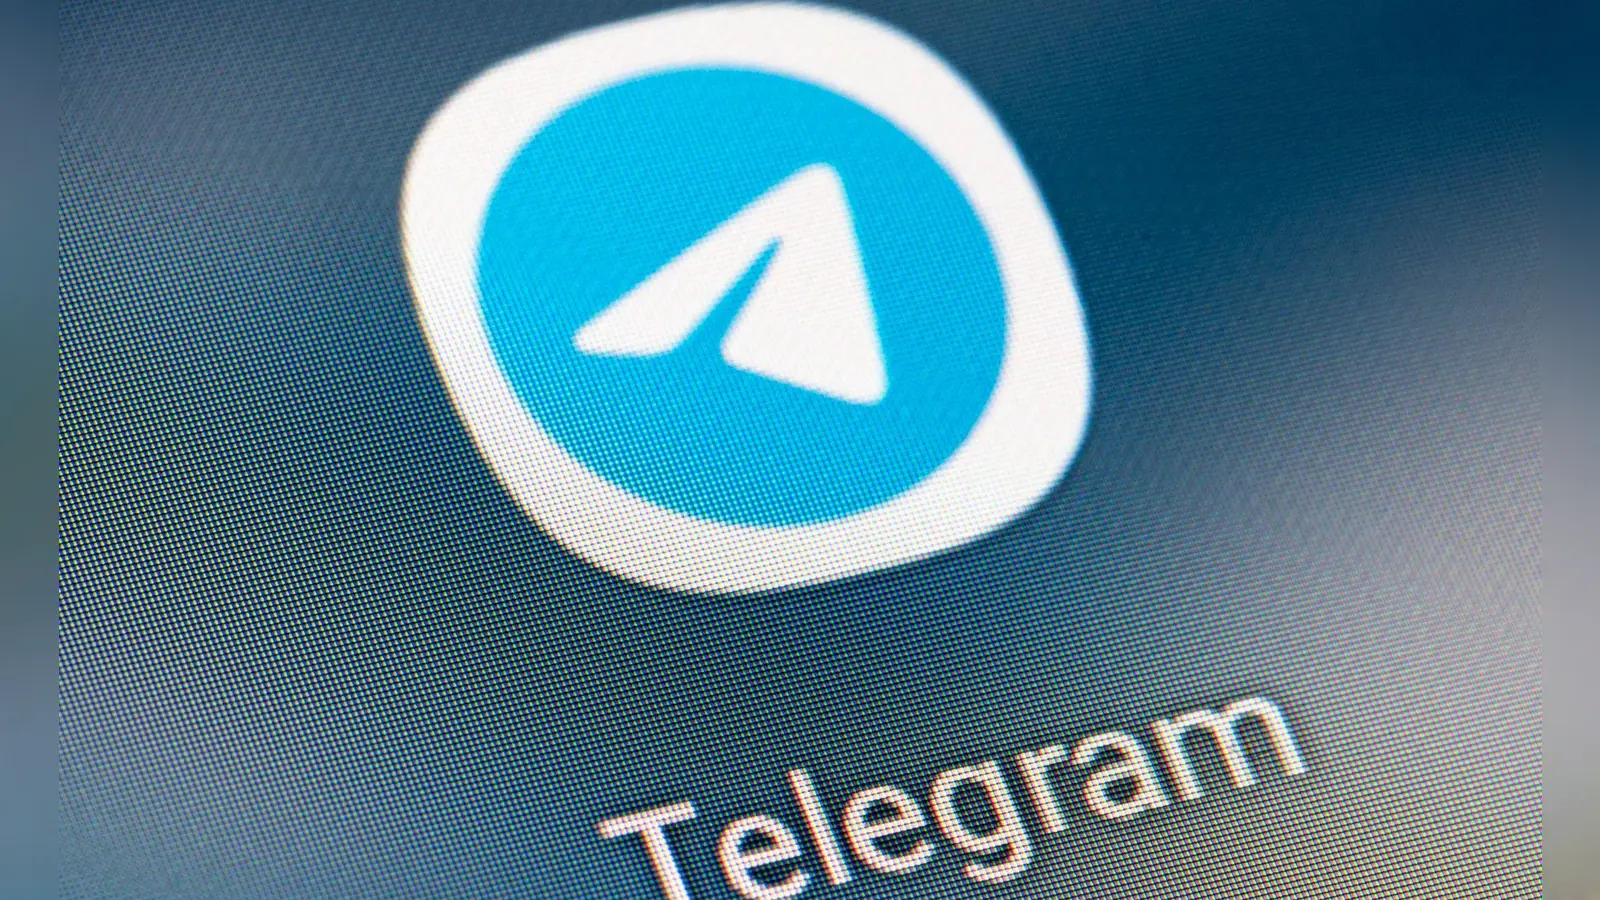 Die Justiz in Spanien hat die Nachrichten-App Telegram vorübergehend landesweit gesperrt. (Foto: Fabian Sommer/dpa)